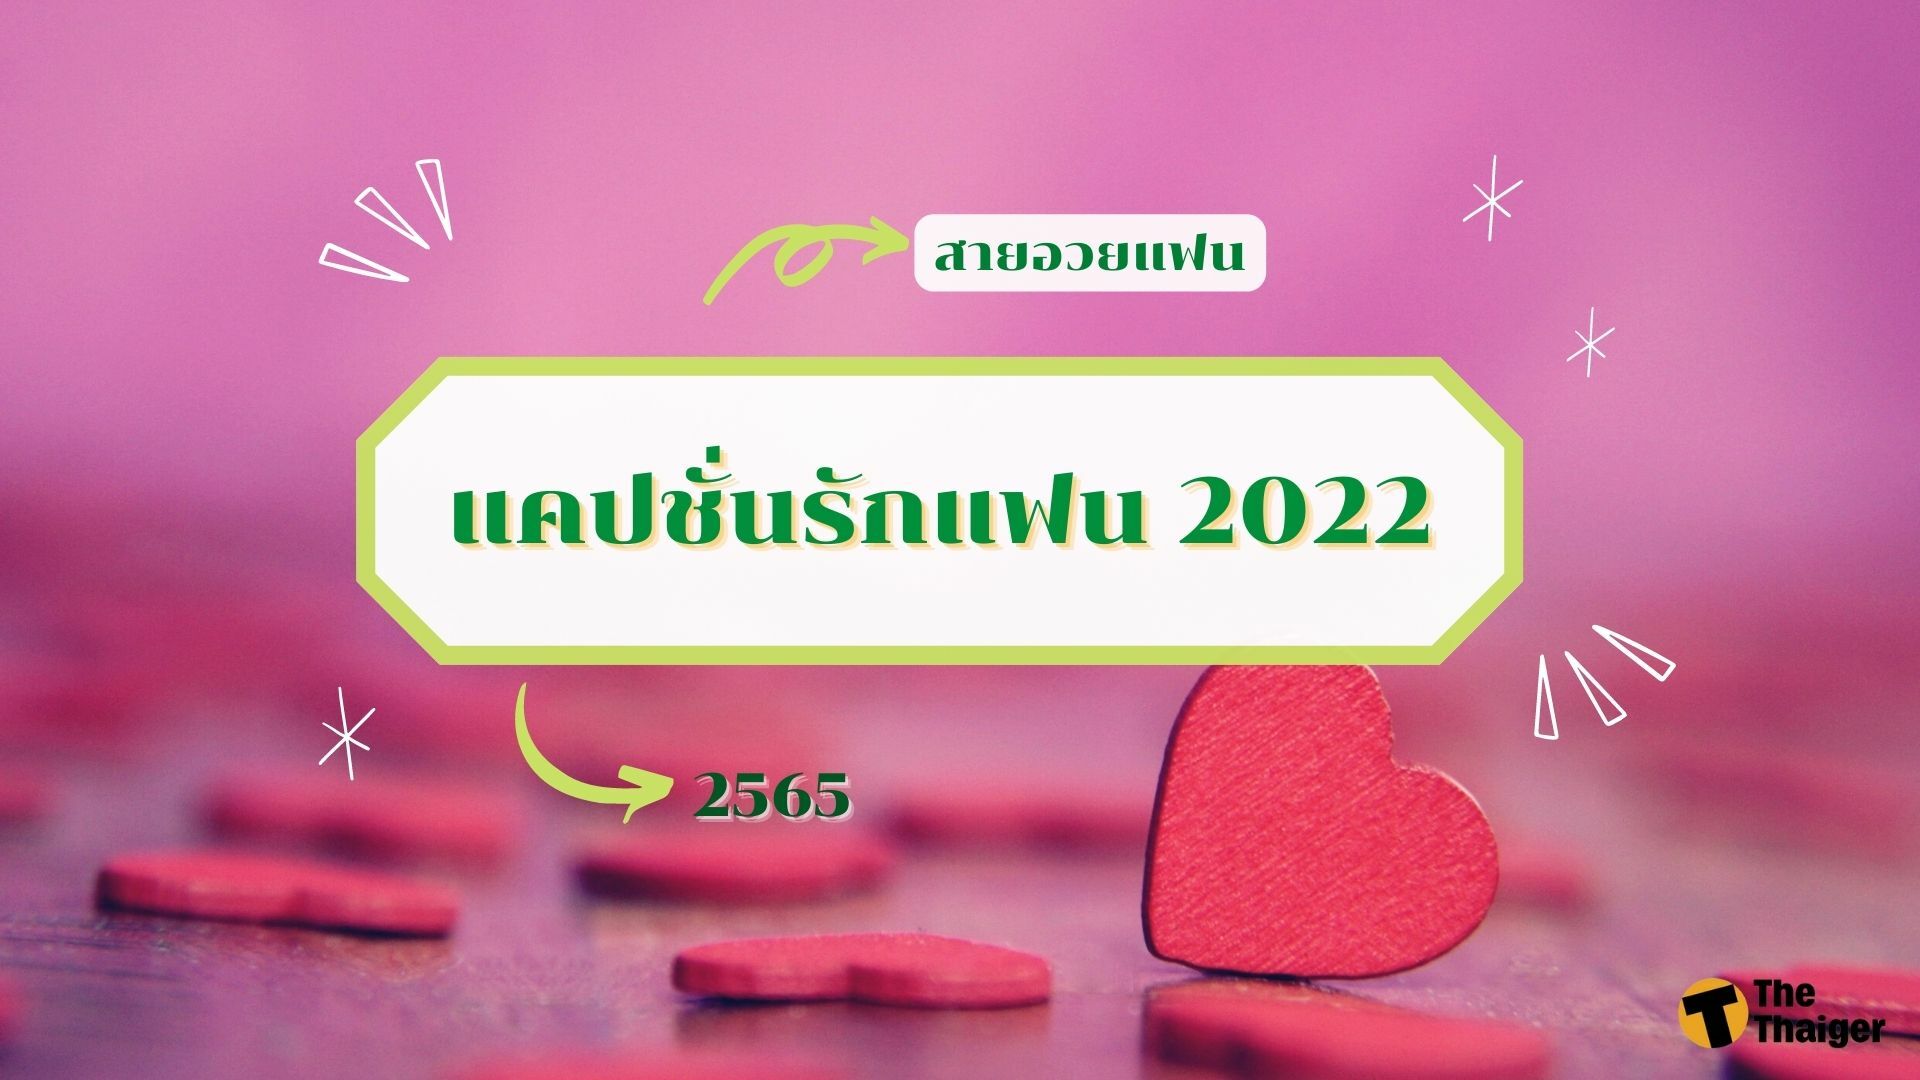 70 แคปชั่นรักแฟน 2022 อวดแฟนแบบตะโกน หวานจนน้ำตาลยังแพ้ | Thaiger ข่าวไทย